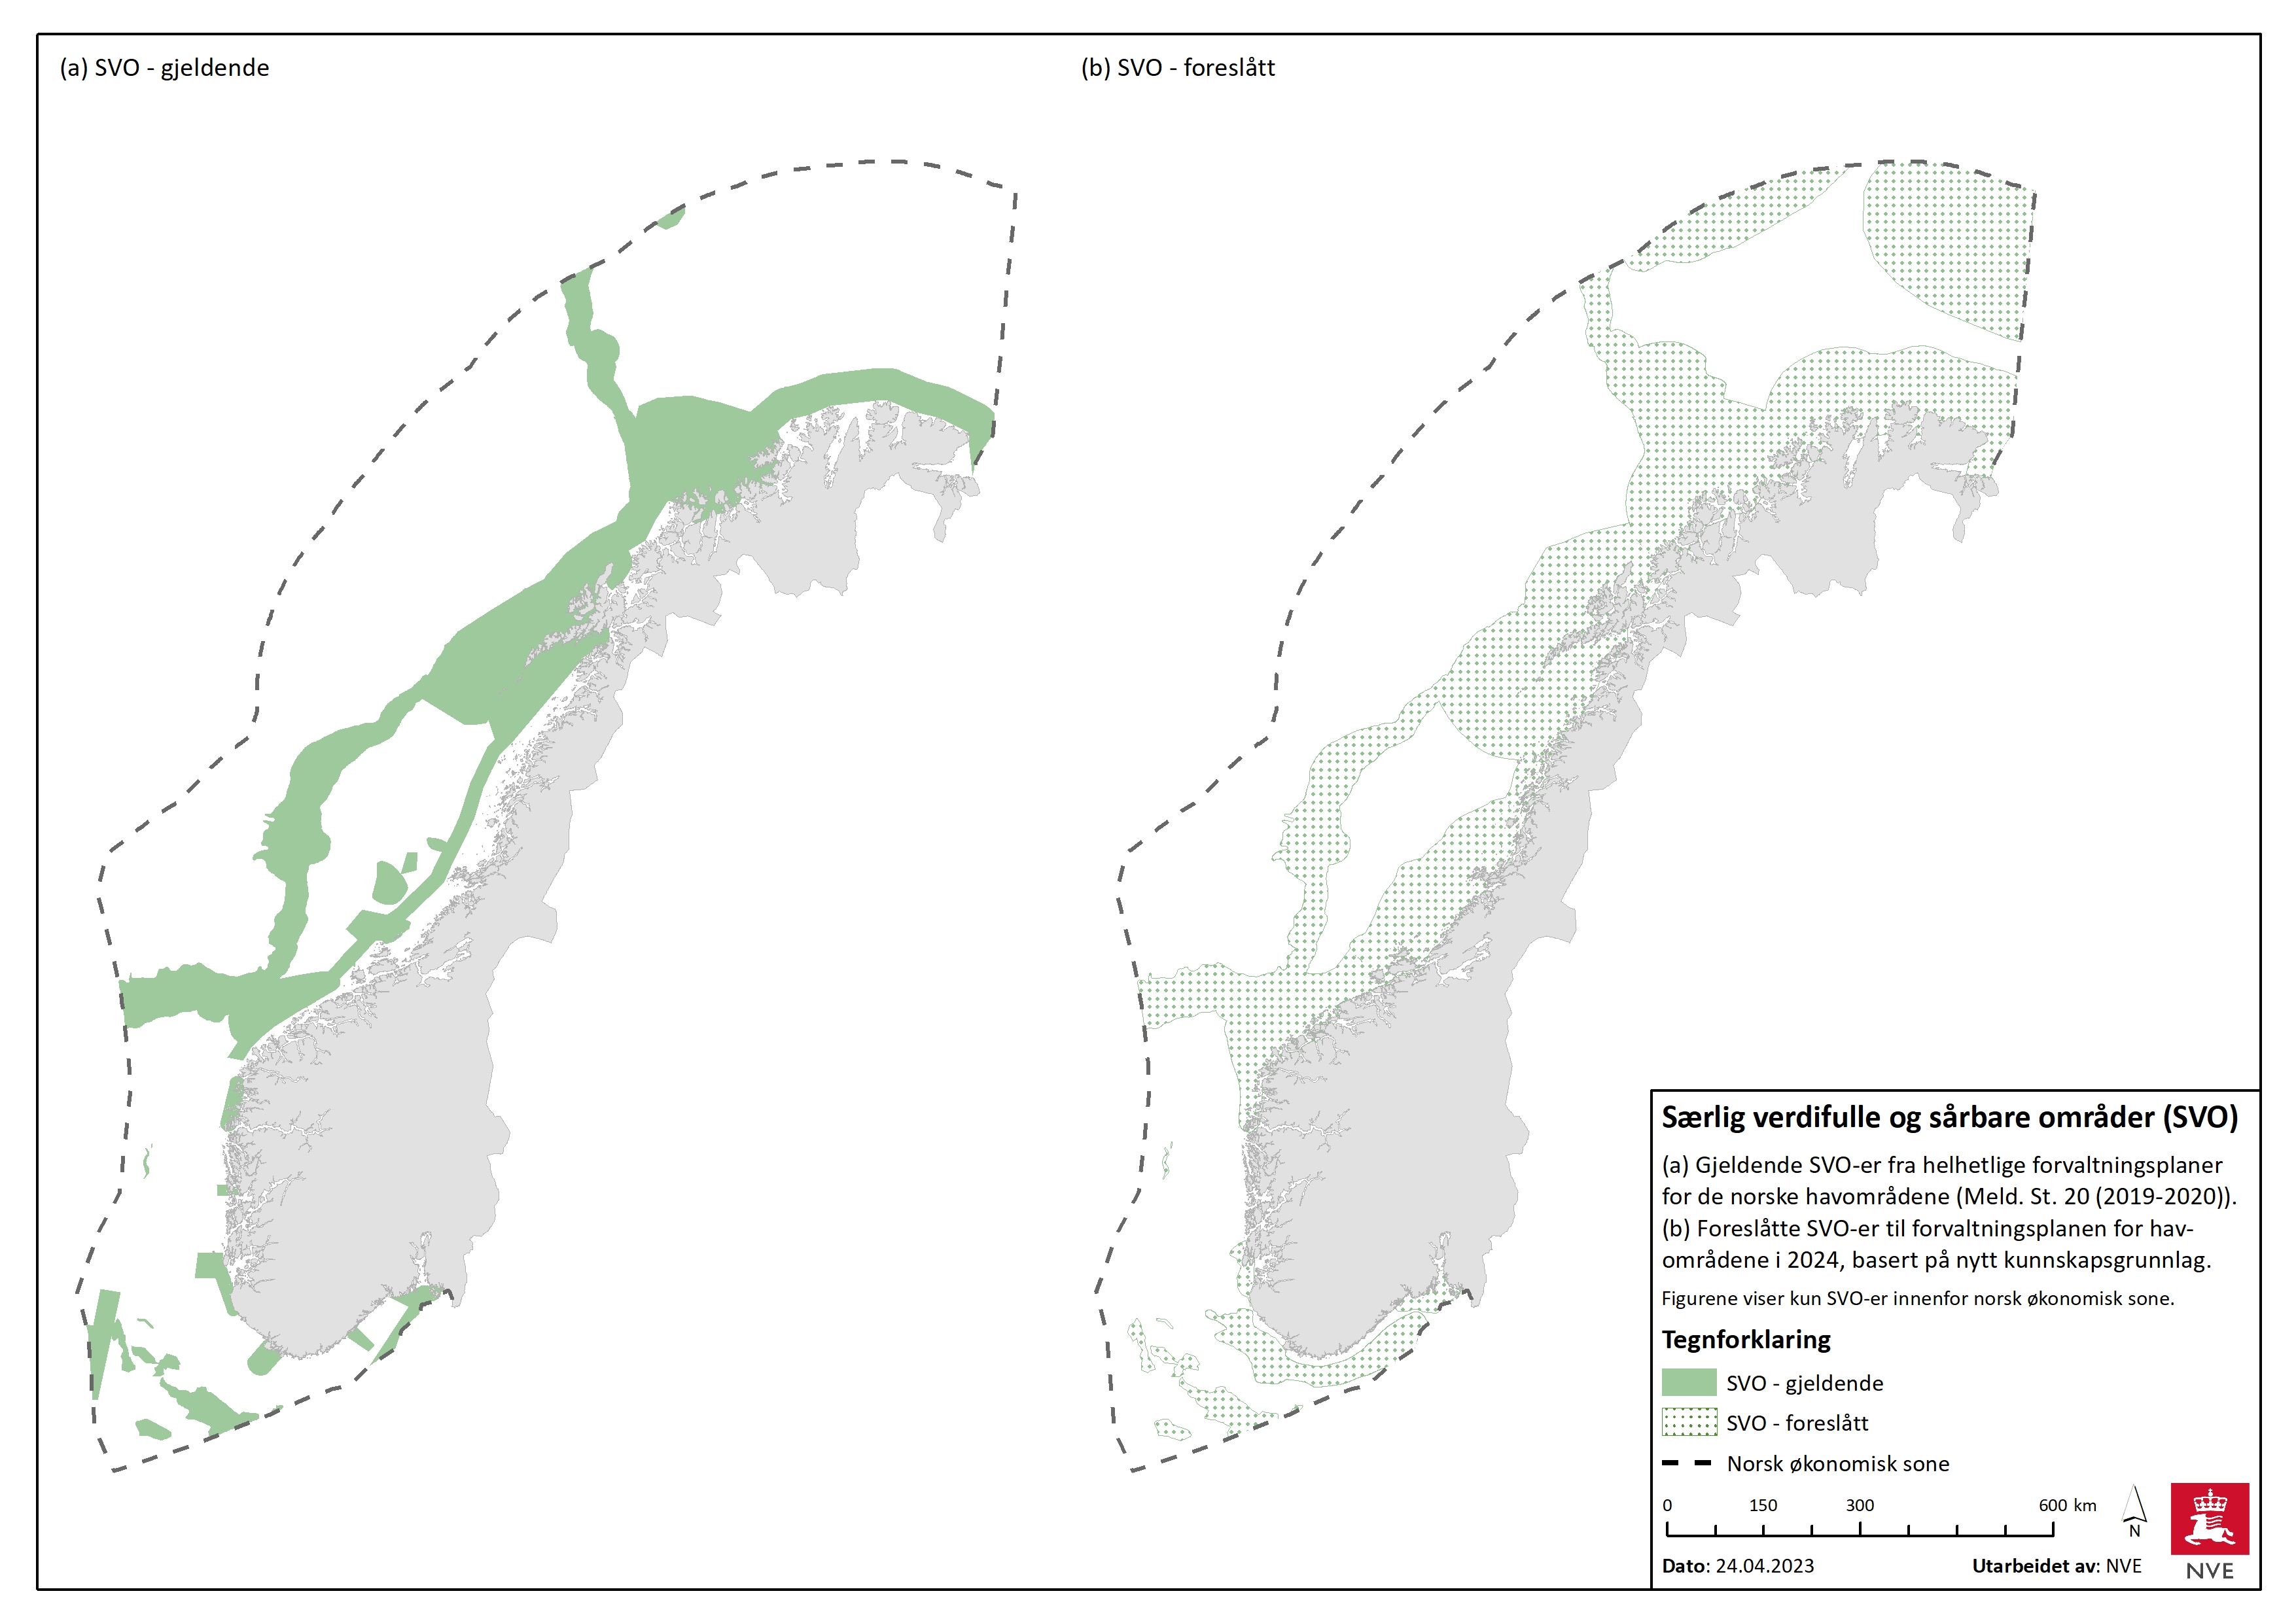 Figuren viser en oversikt med gjeldende SVO-områder fra Meld. St. 20 (2019-2020) til venstre og forslag til nye områder fra Miljøverdi-rapport 2021. Kilde: NVE.